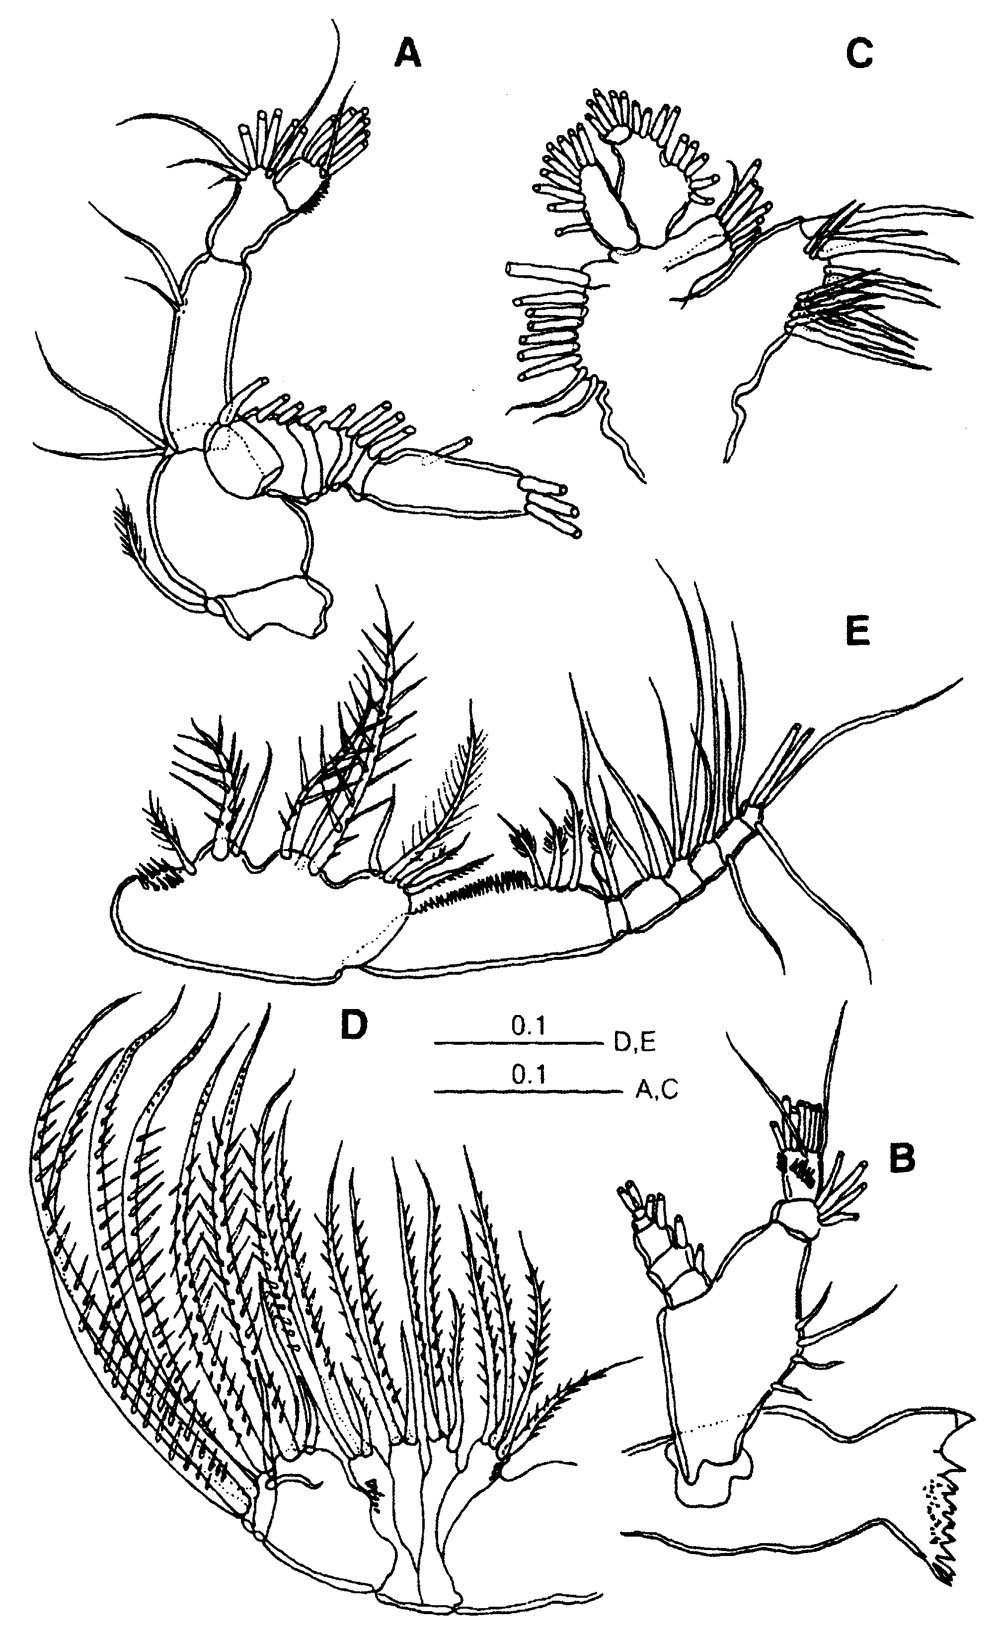 Espèce Centropages uedai - Planche 2 de figures morphologiques